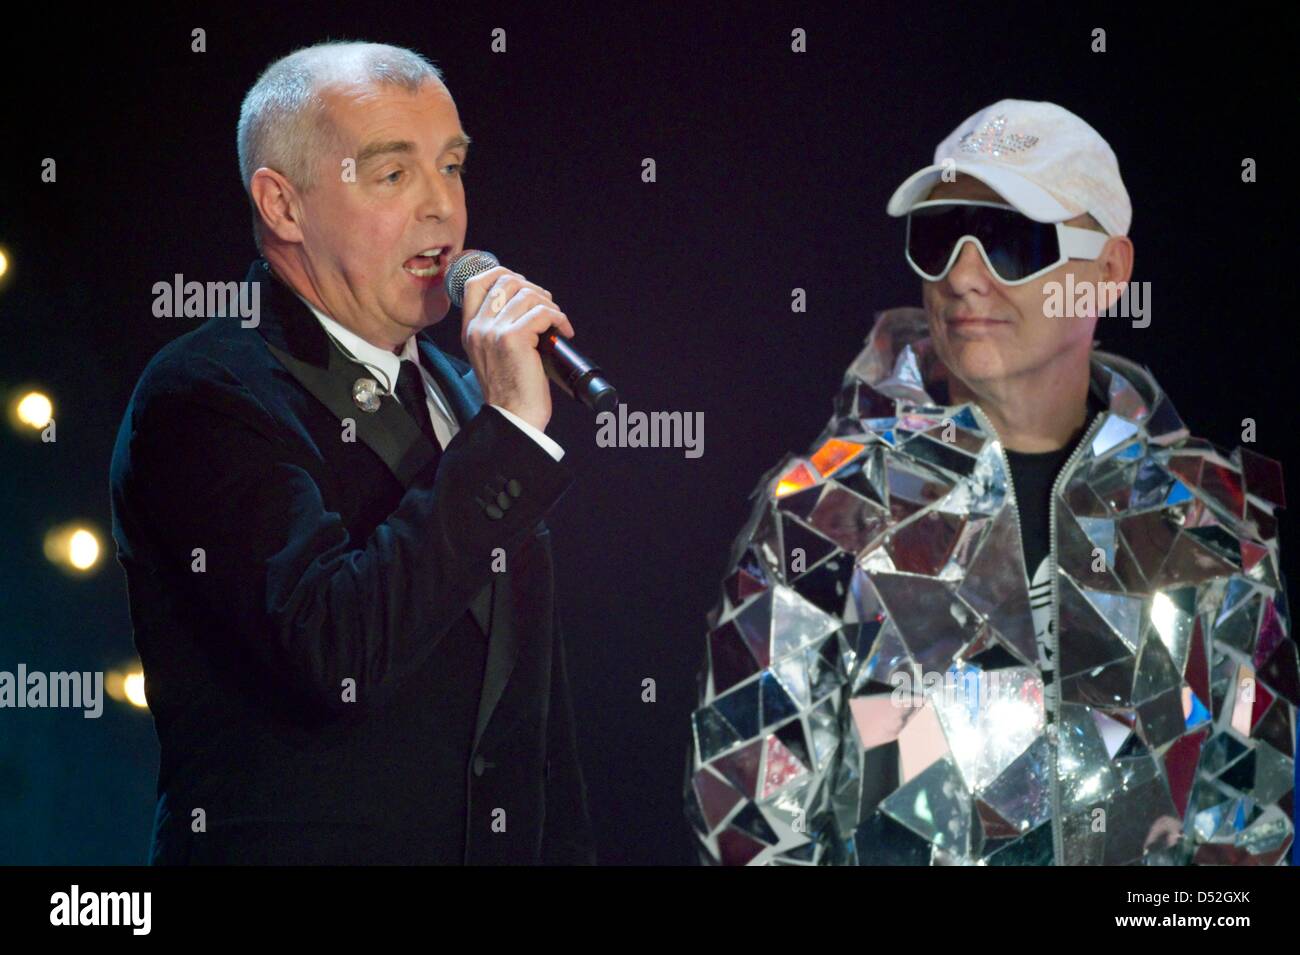 Neil Tennant (L) e Chris Lowe britannica di elettro-pop duo 'Pet Shop Boys' esegue durante la trasmissione in diretta della TV tedesca mostra 'scommettere che..?" a Erfurt, Germania, 27 febbraio 2010. Foto: Michael Reichel Foto Stock